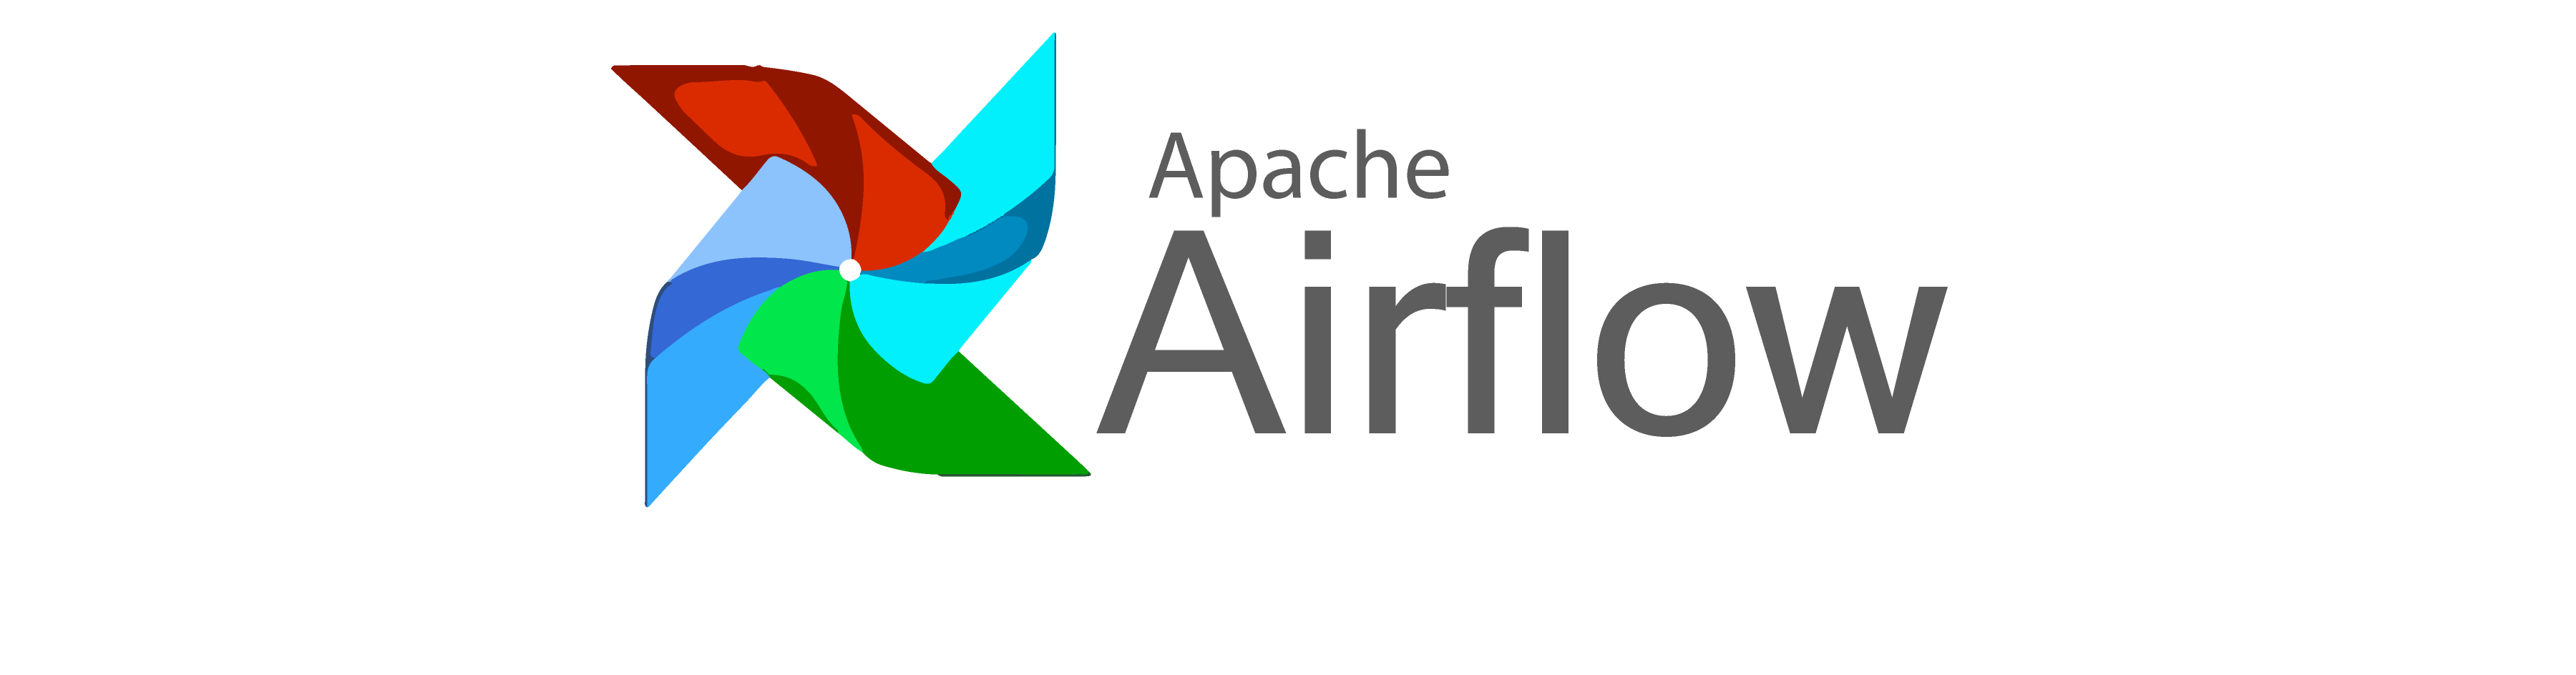 Apache Airflow — ExternalTaskSensor ile DAG Bağımlılığı Oluşturmak | by  Onur Taşhan | Trendyol Tech | Medium